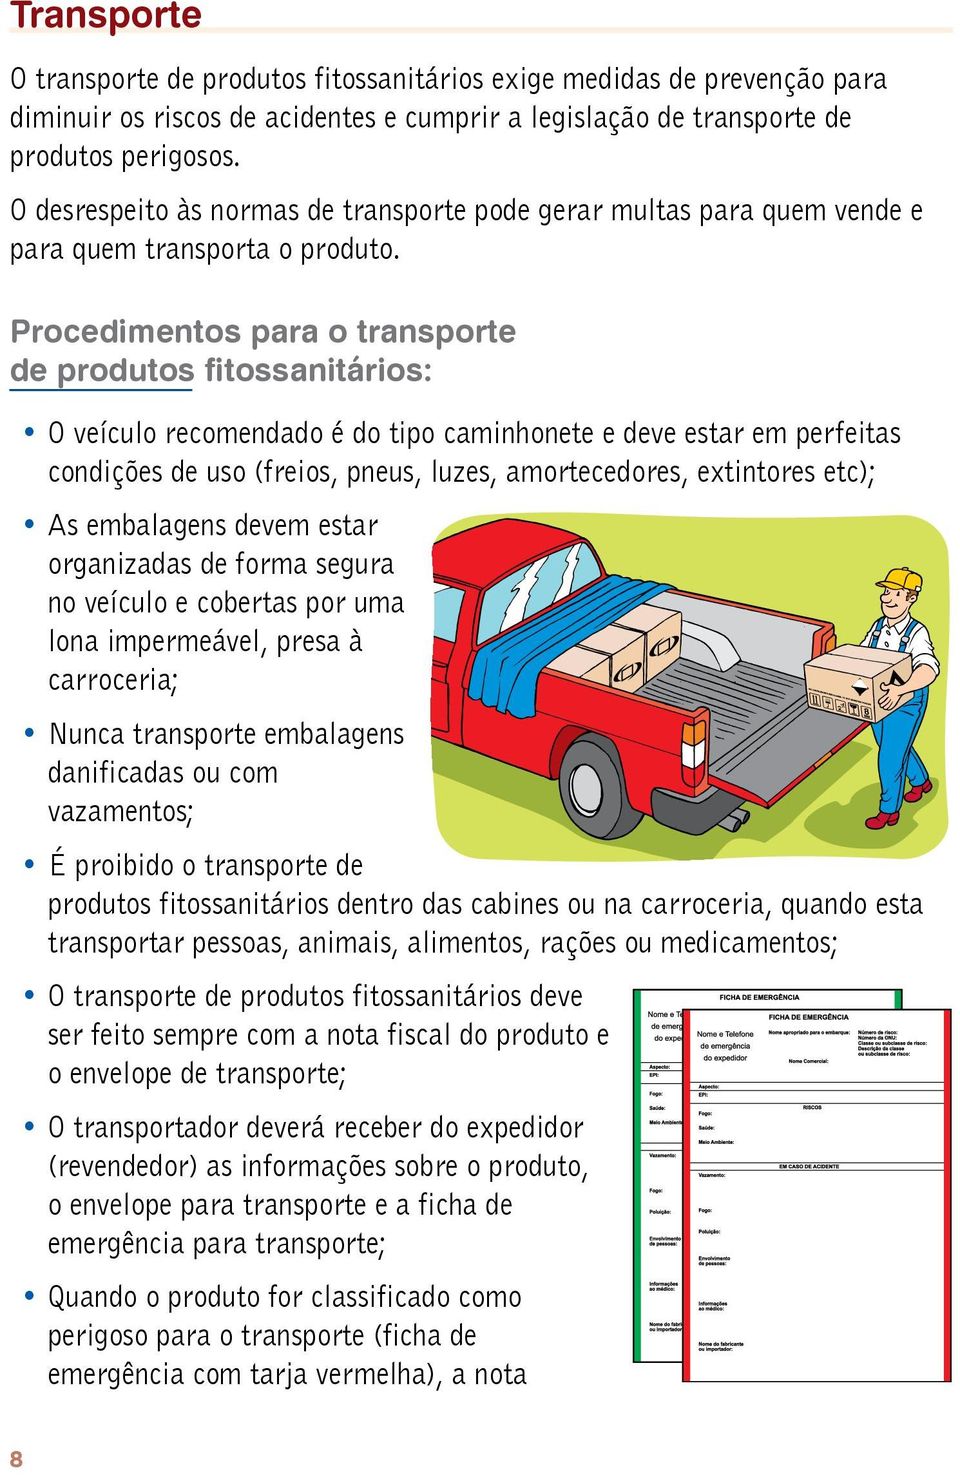 Procedimentos para o transporte de produtos fitossanitários: O veículo recomendado é do tipo caminhonete e deve estar em perfeitas condições de uso (freios, pneus, luzes, amortecedores, extintores